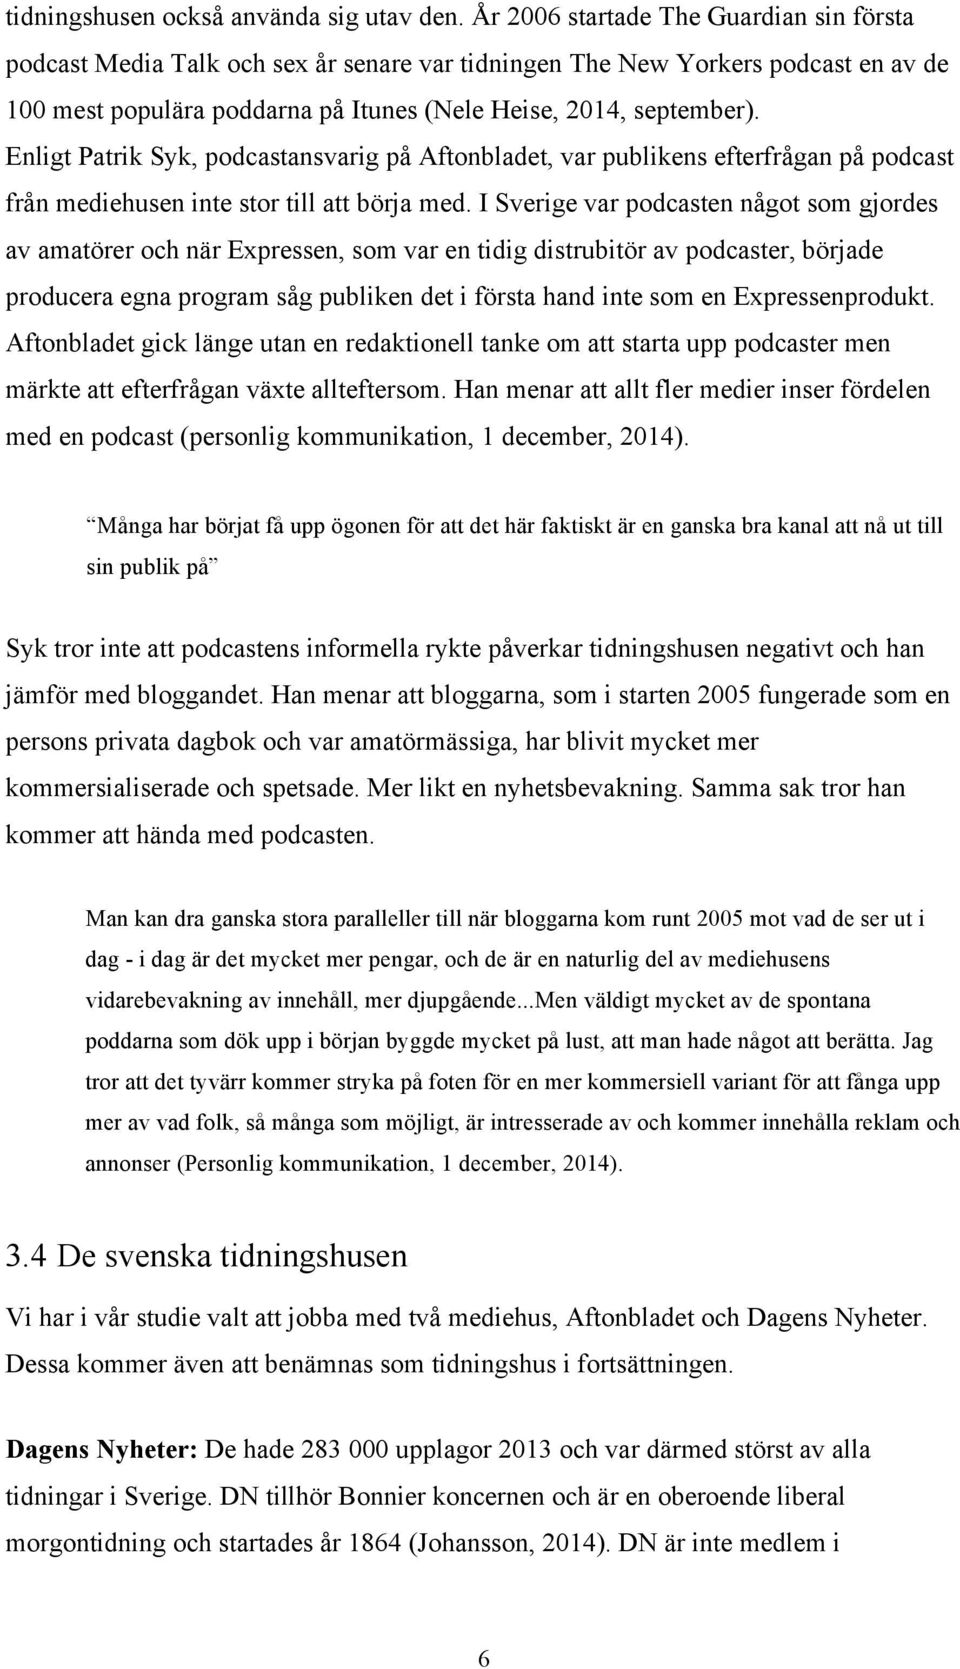 Enligt Patrik Syk, podcastansvarig på Aftonbladet, var publikens efterfrågan på podcast från mediehusen inte stor till att börja med.